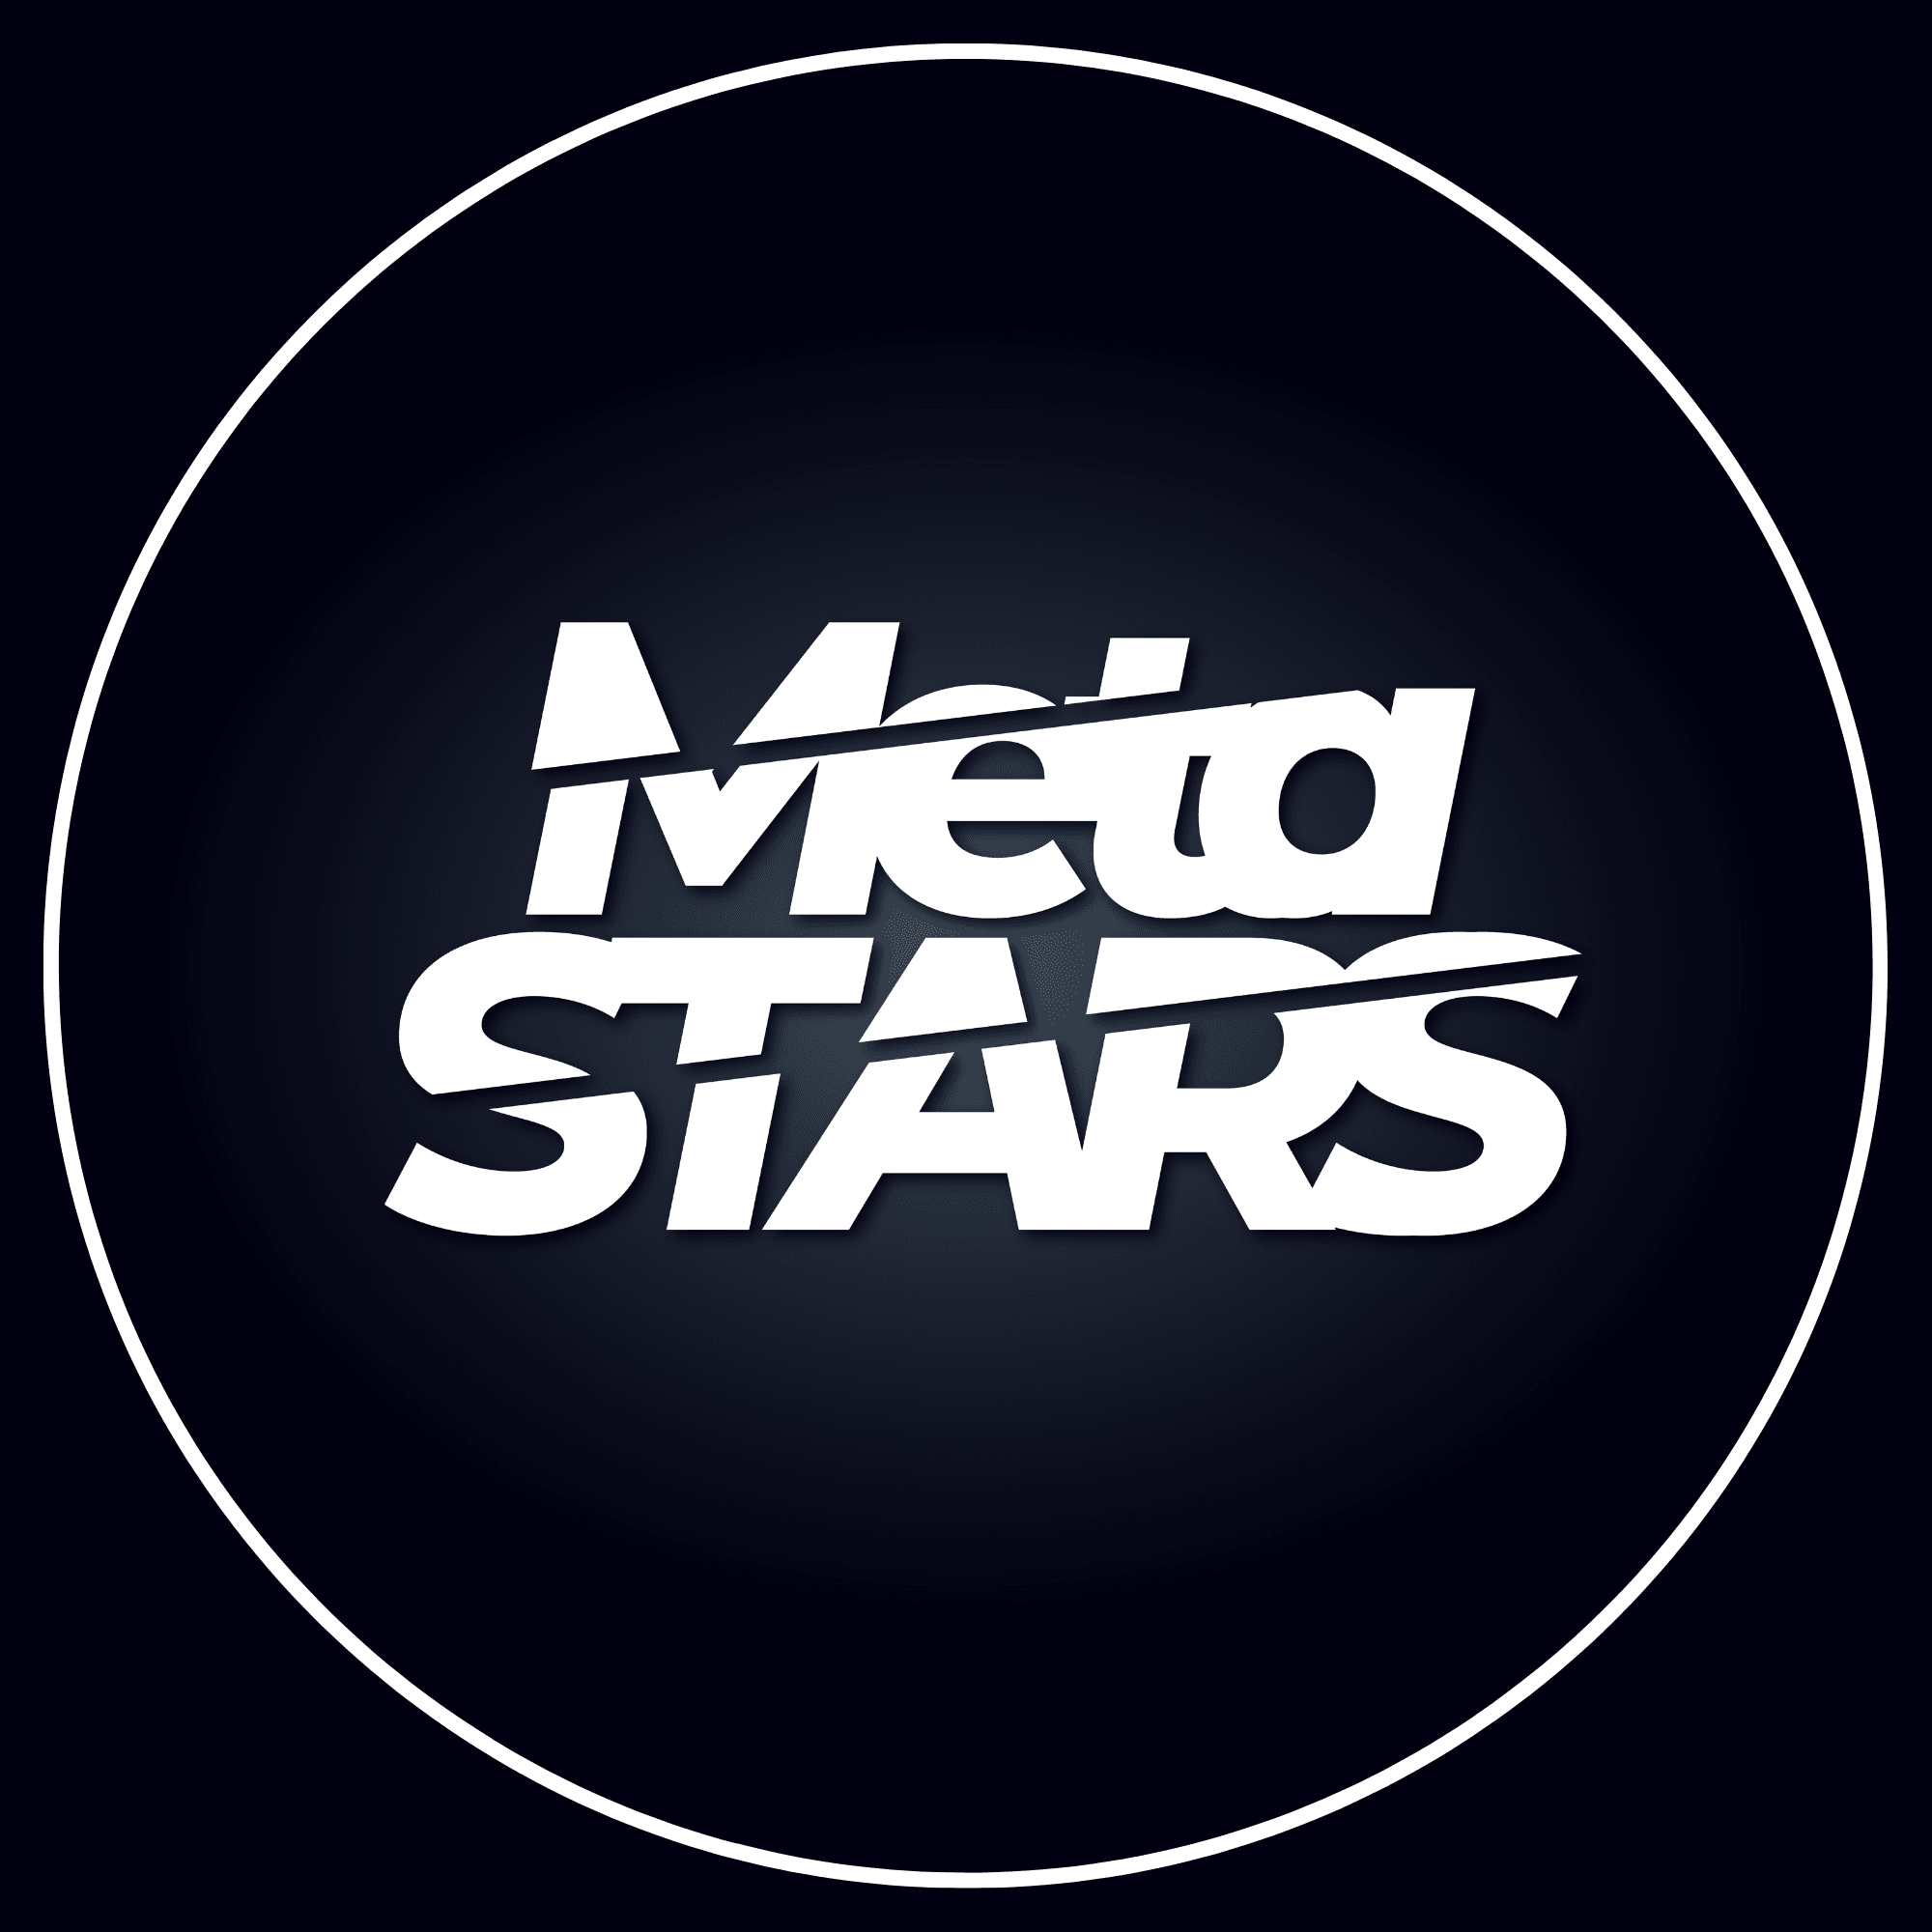 TheMetaStars_Collection